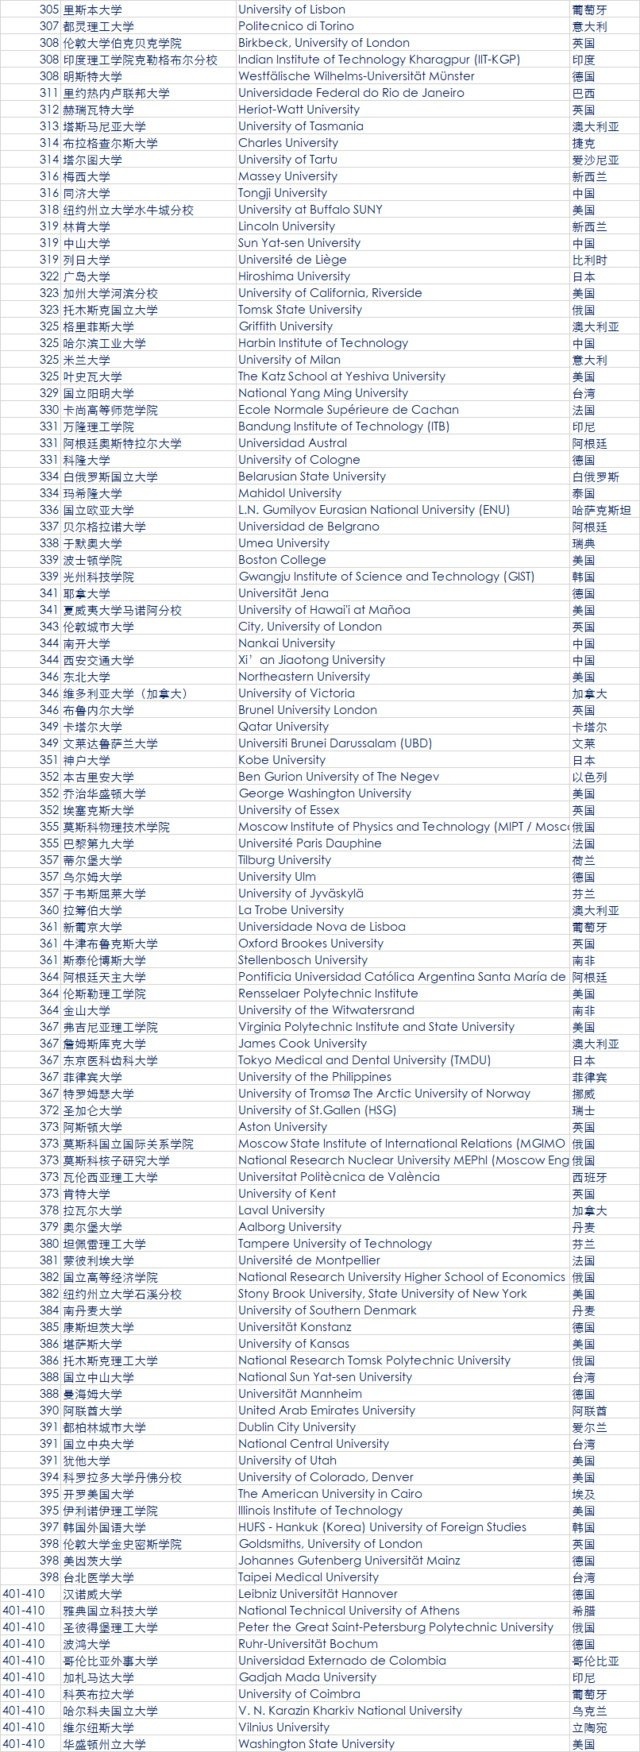 2018年QS世界大学排名发布 中国大陆6所高校进百强4